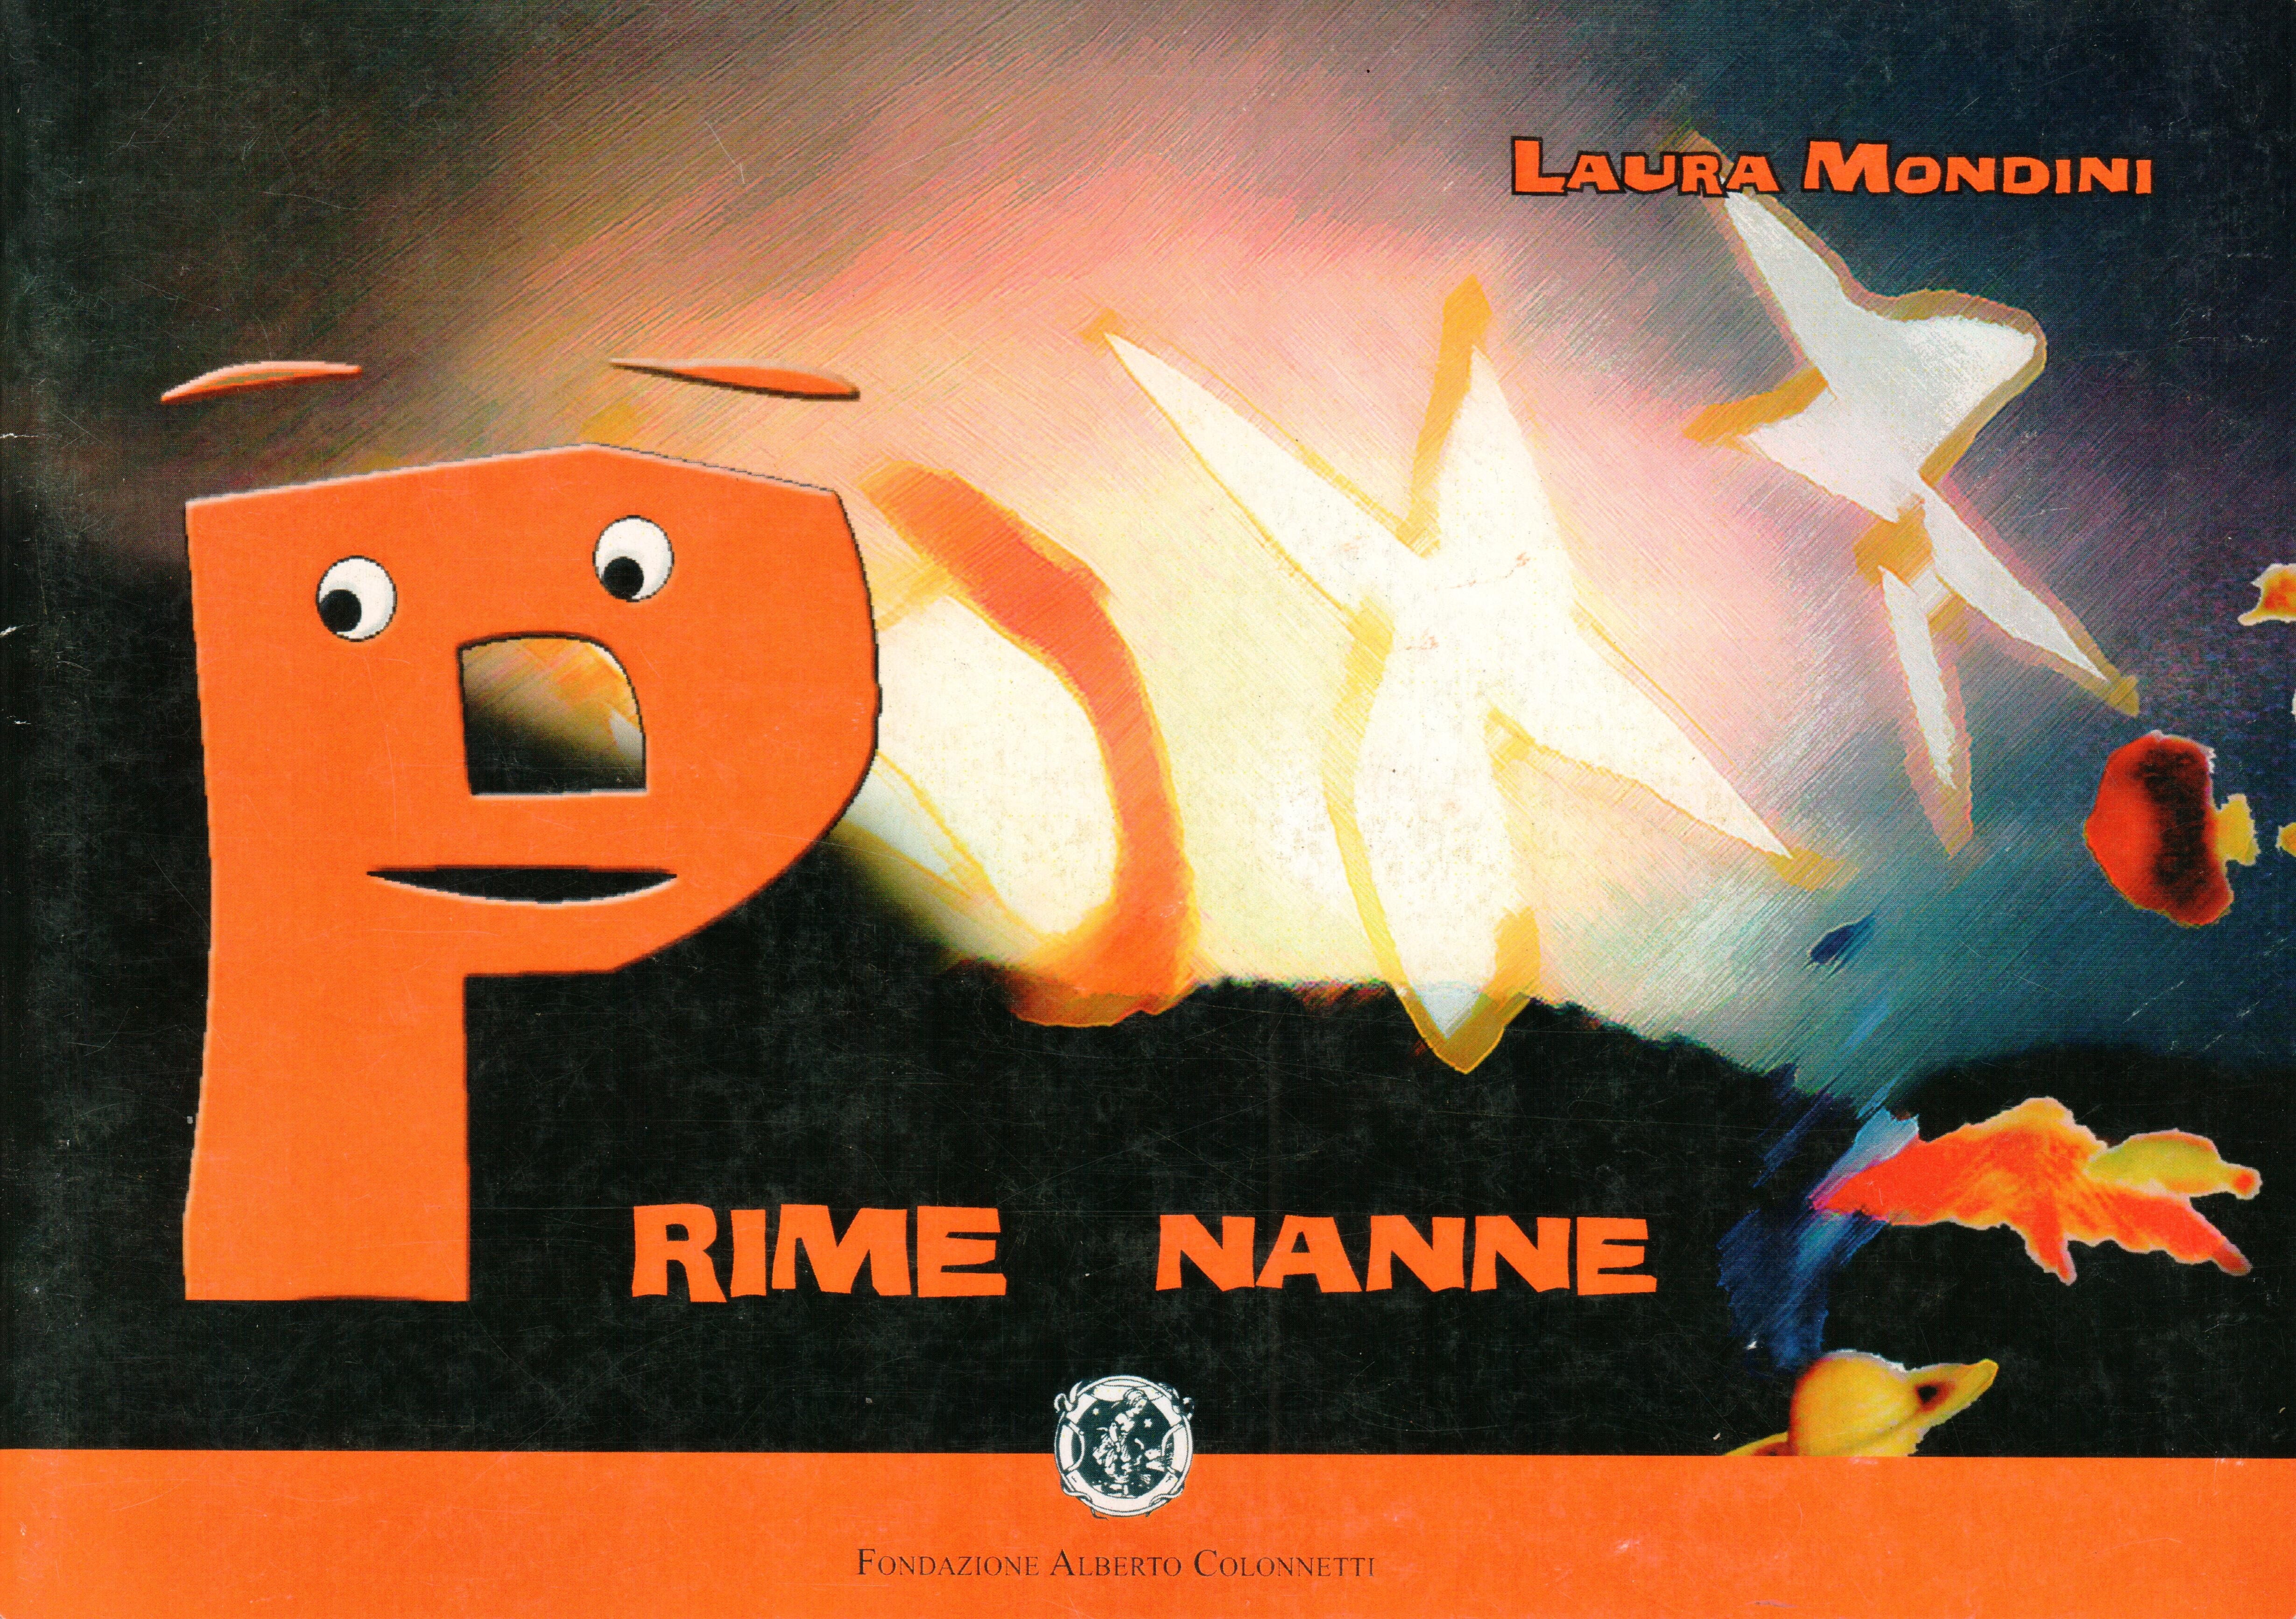 Prime nanne – Laura Mondini